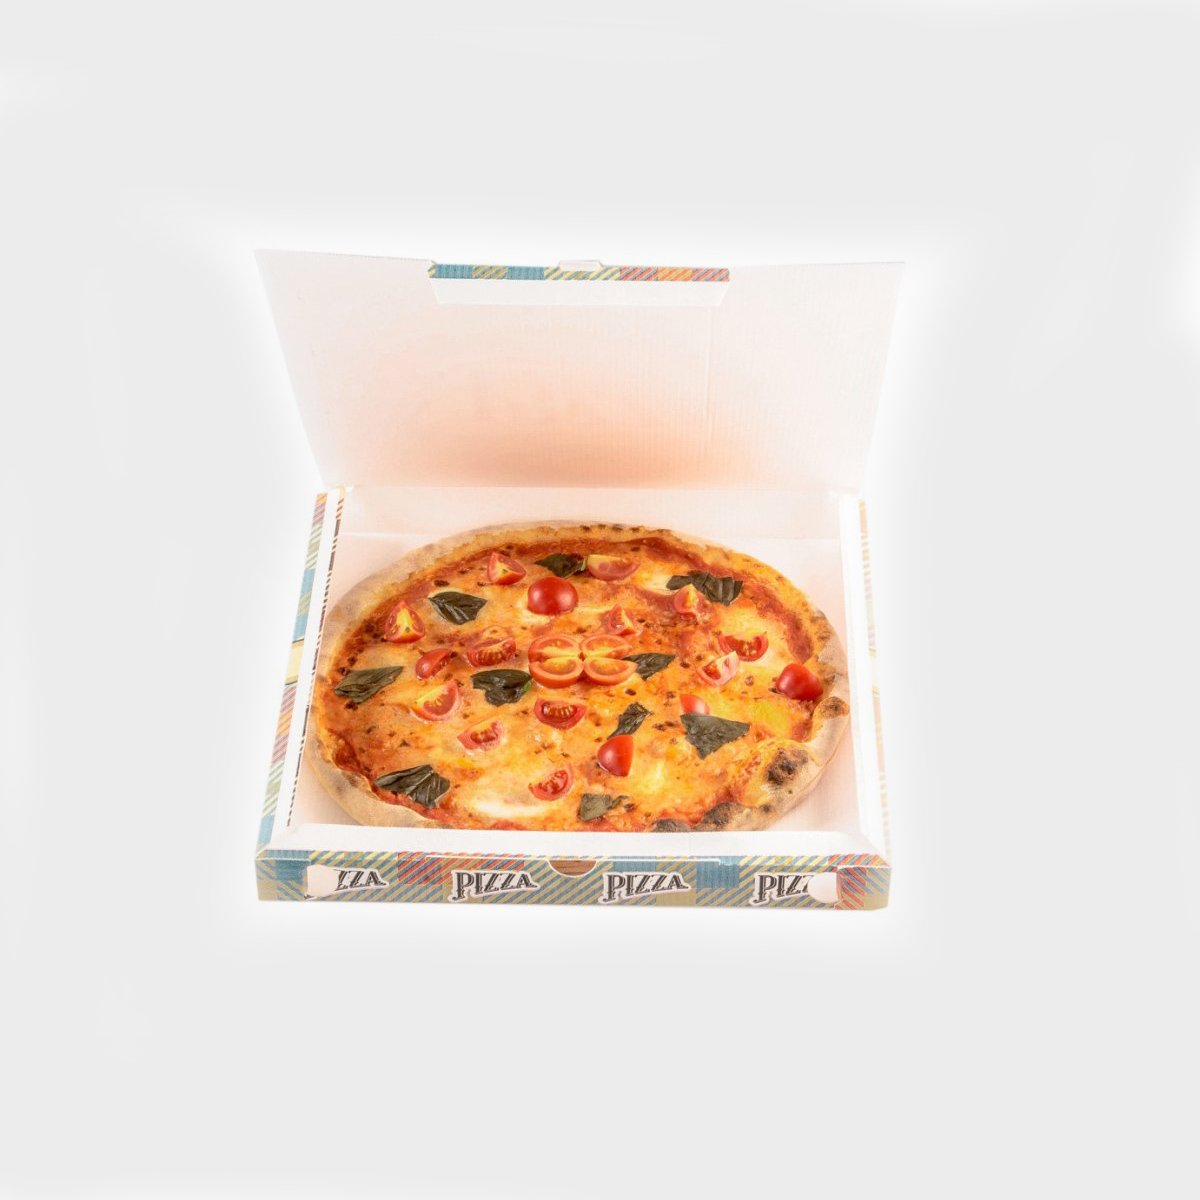 Accessori - Box pizza - ItalService srls